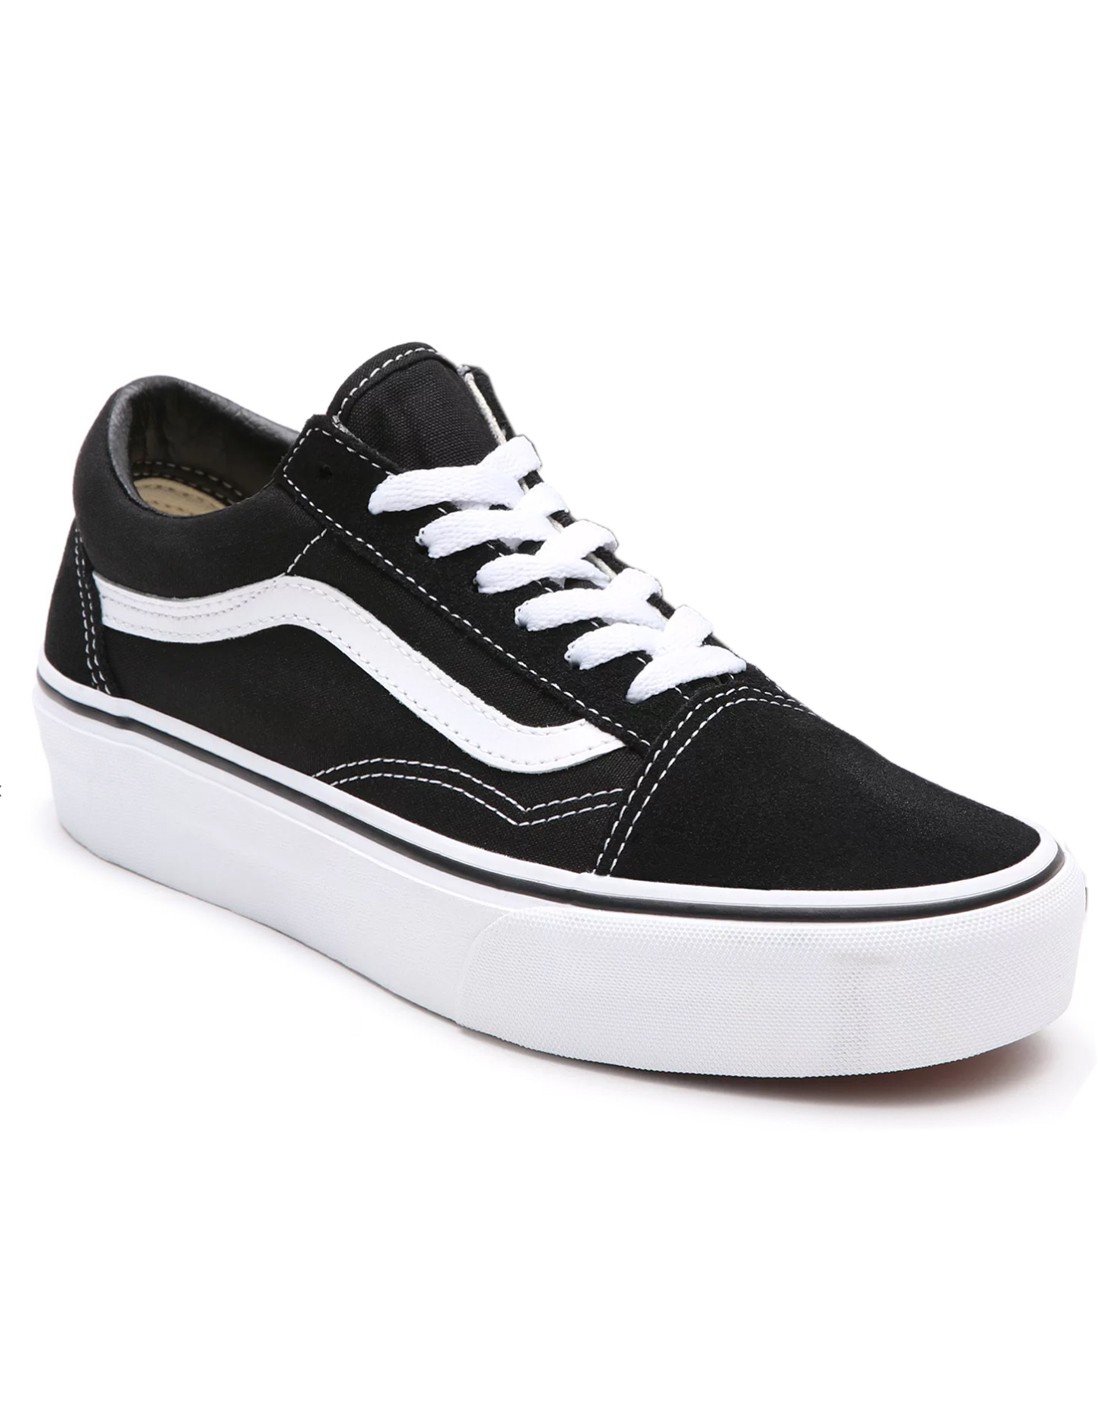 VANS Old Platform Black/White Skate shoes